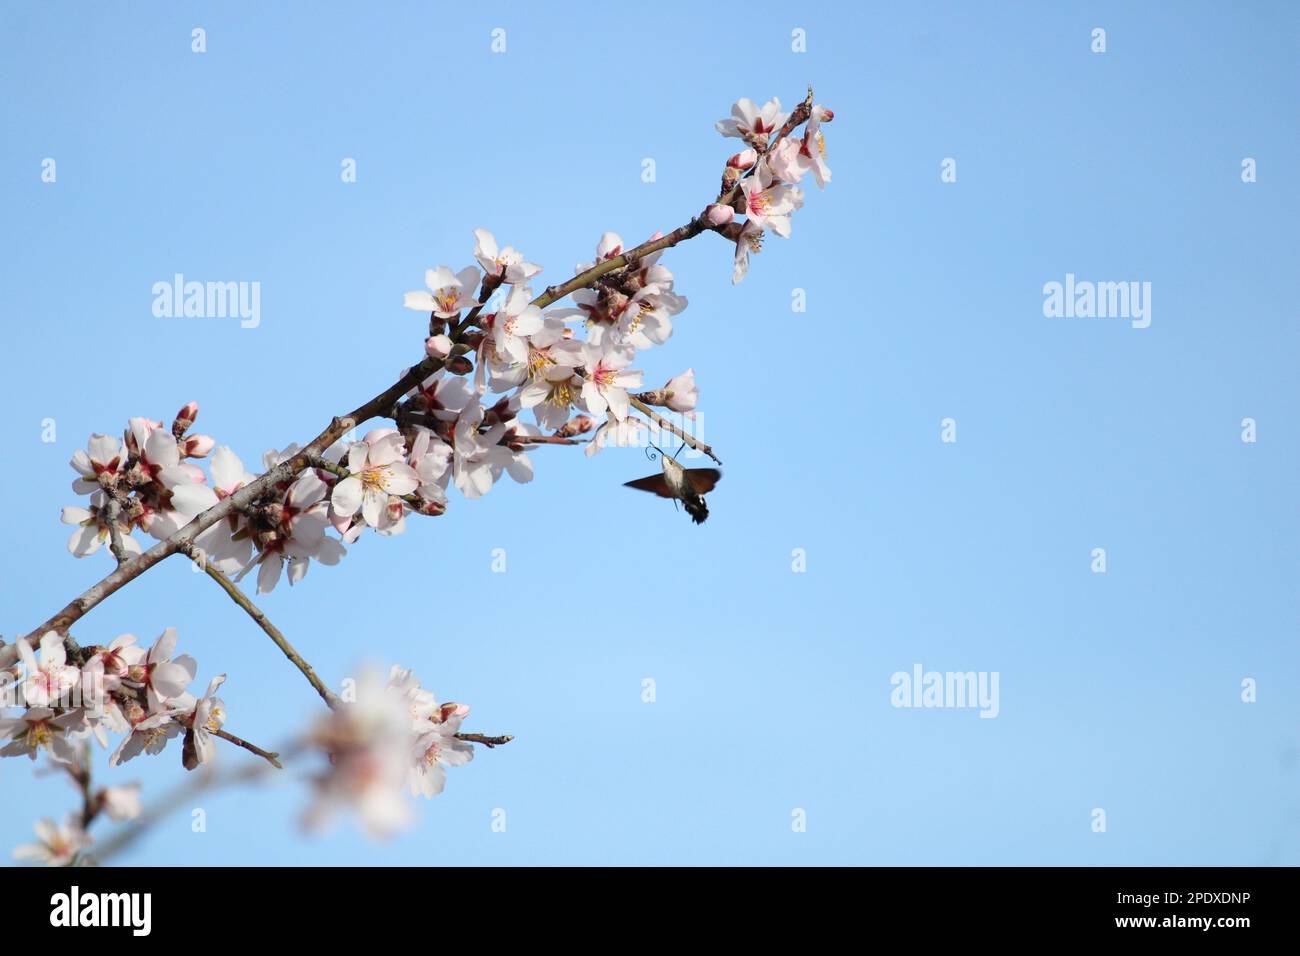 Esfinge colibrí La vida en flor Stock Photo